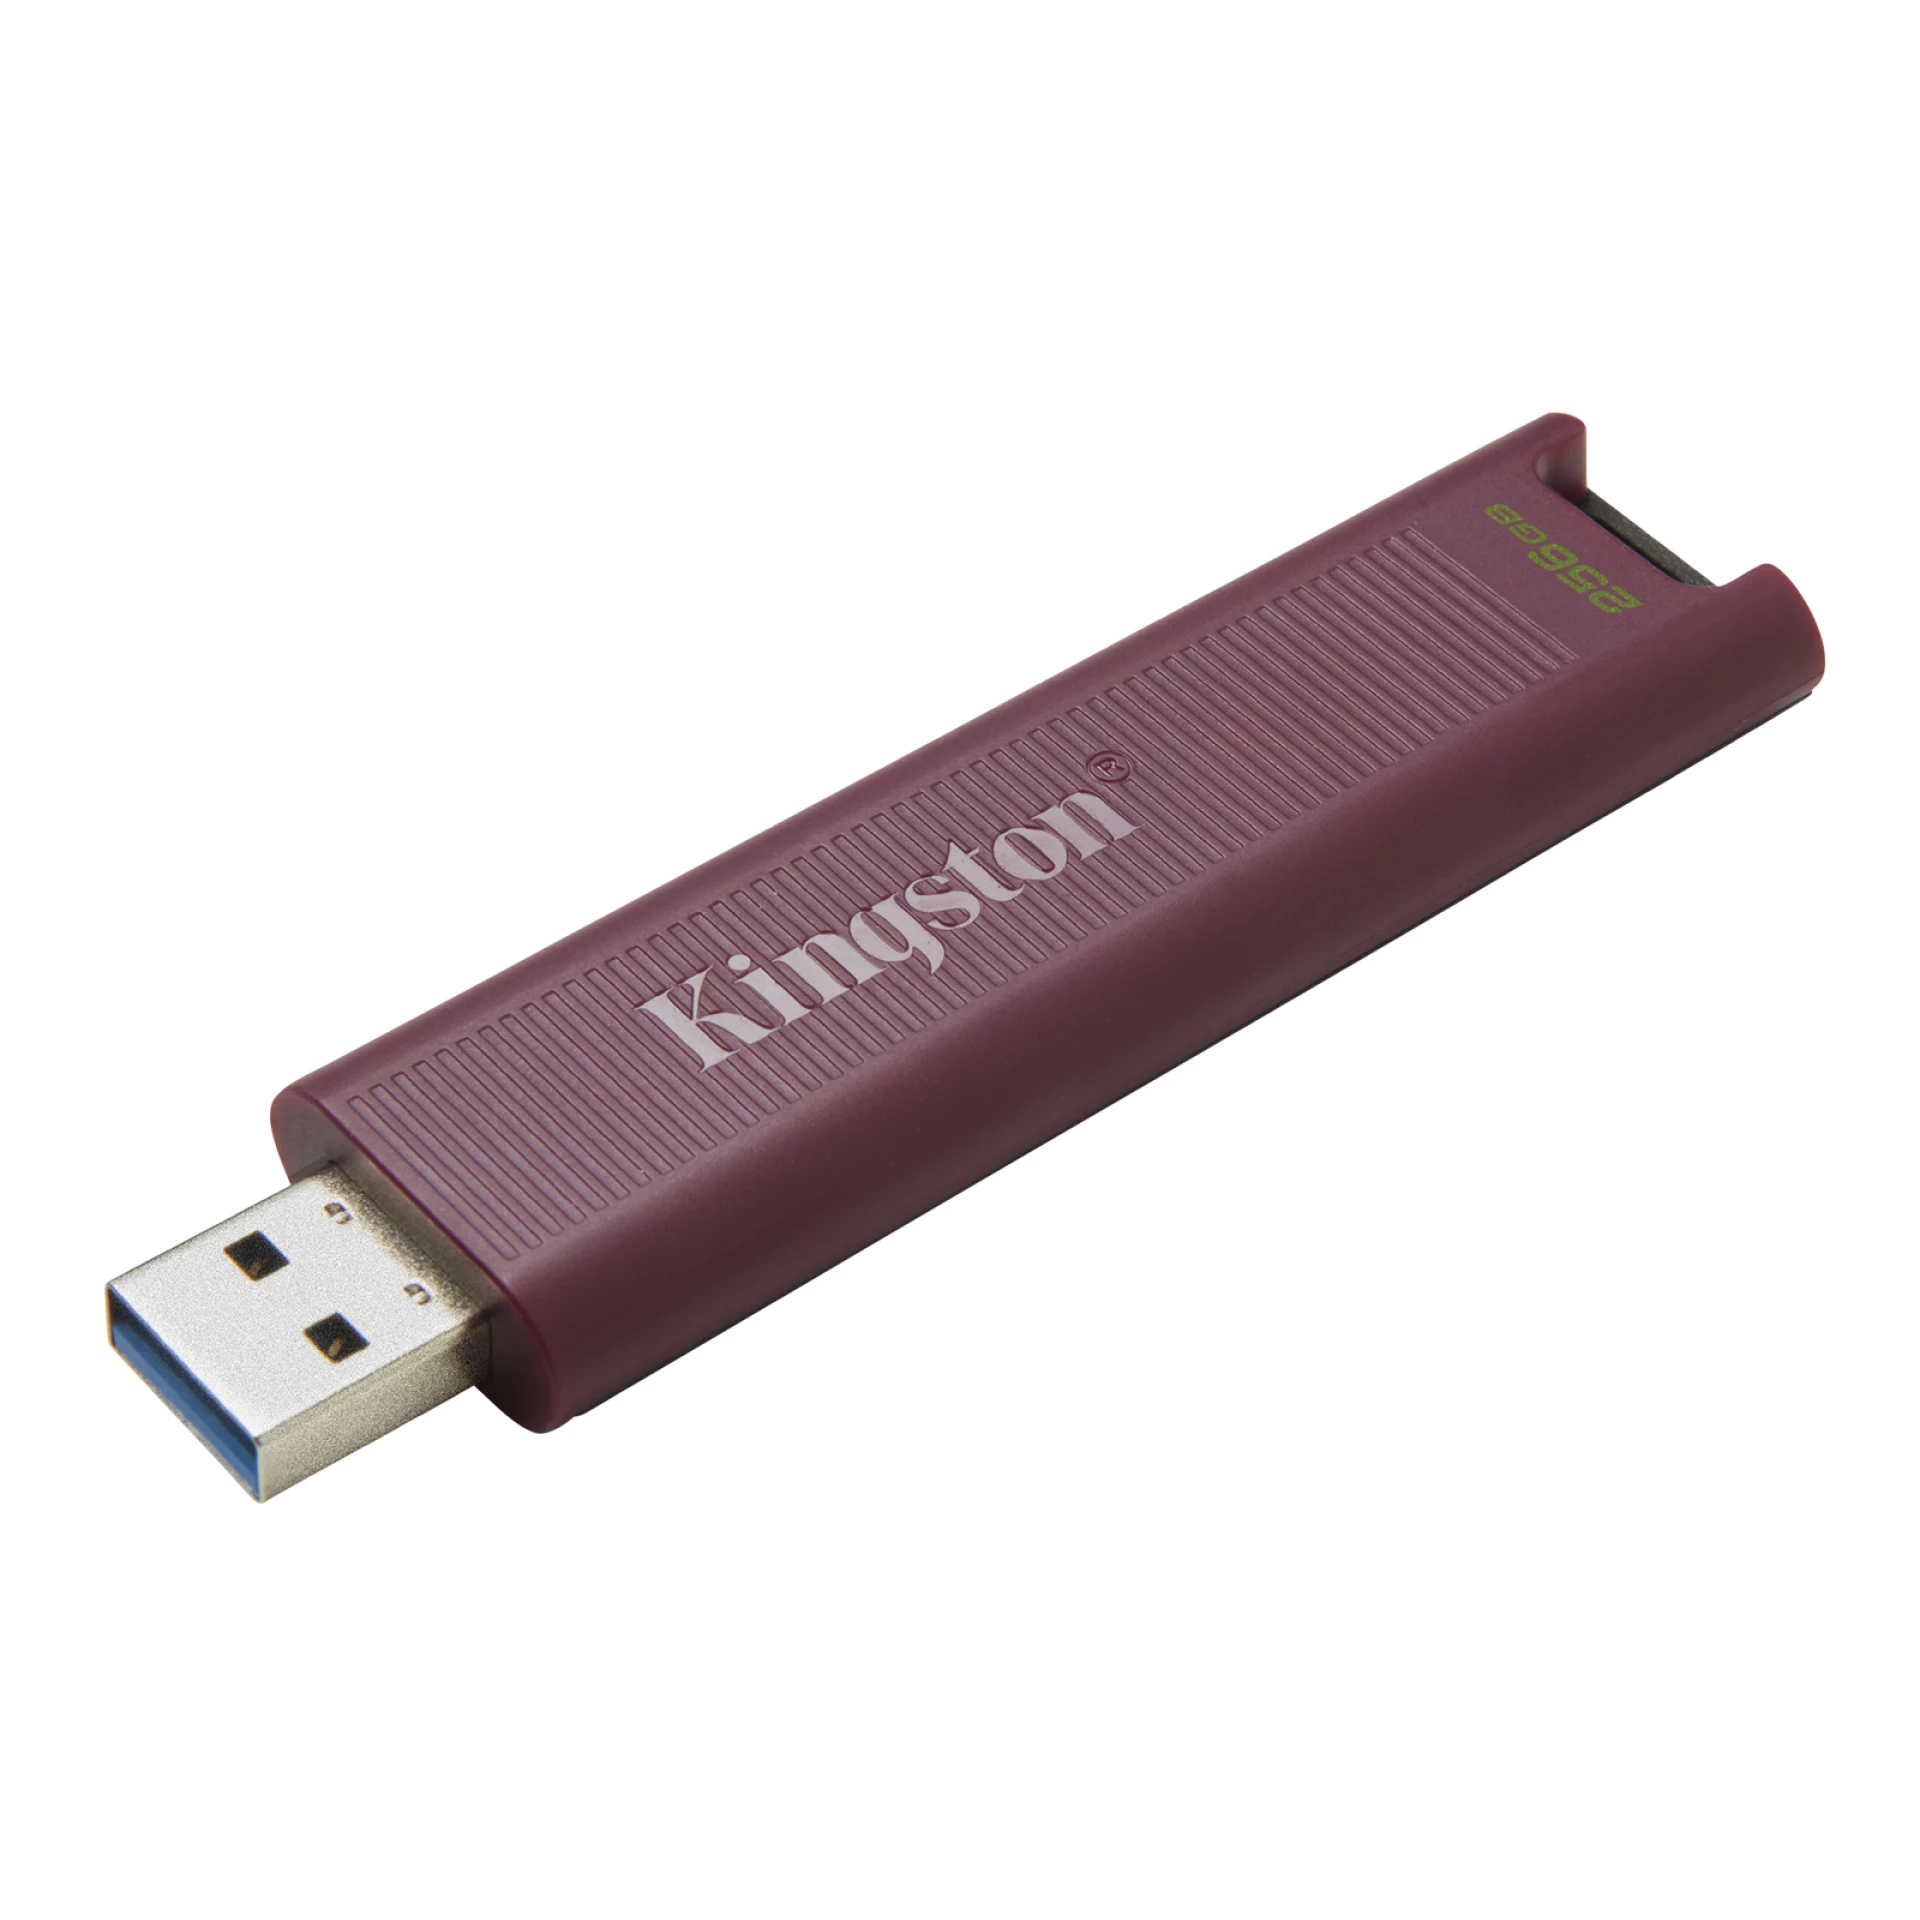 Kingston FD 256GB USB-A